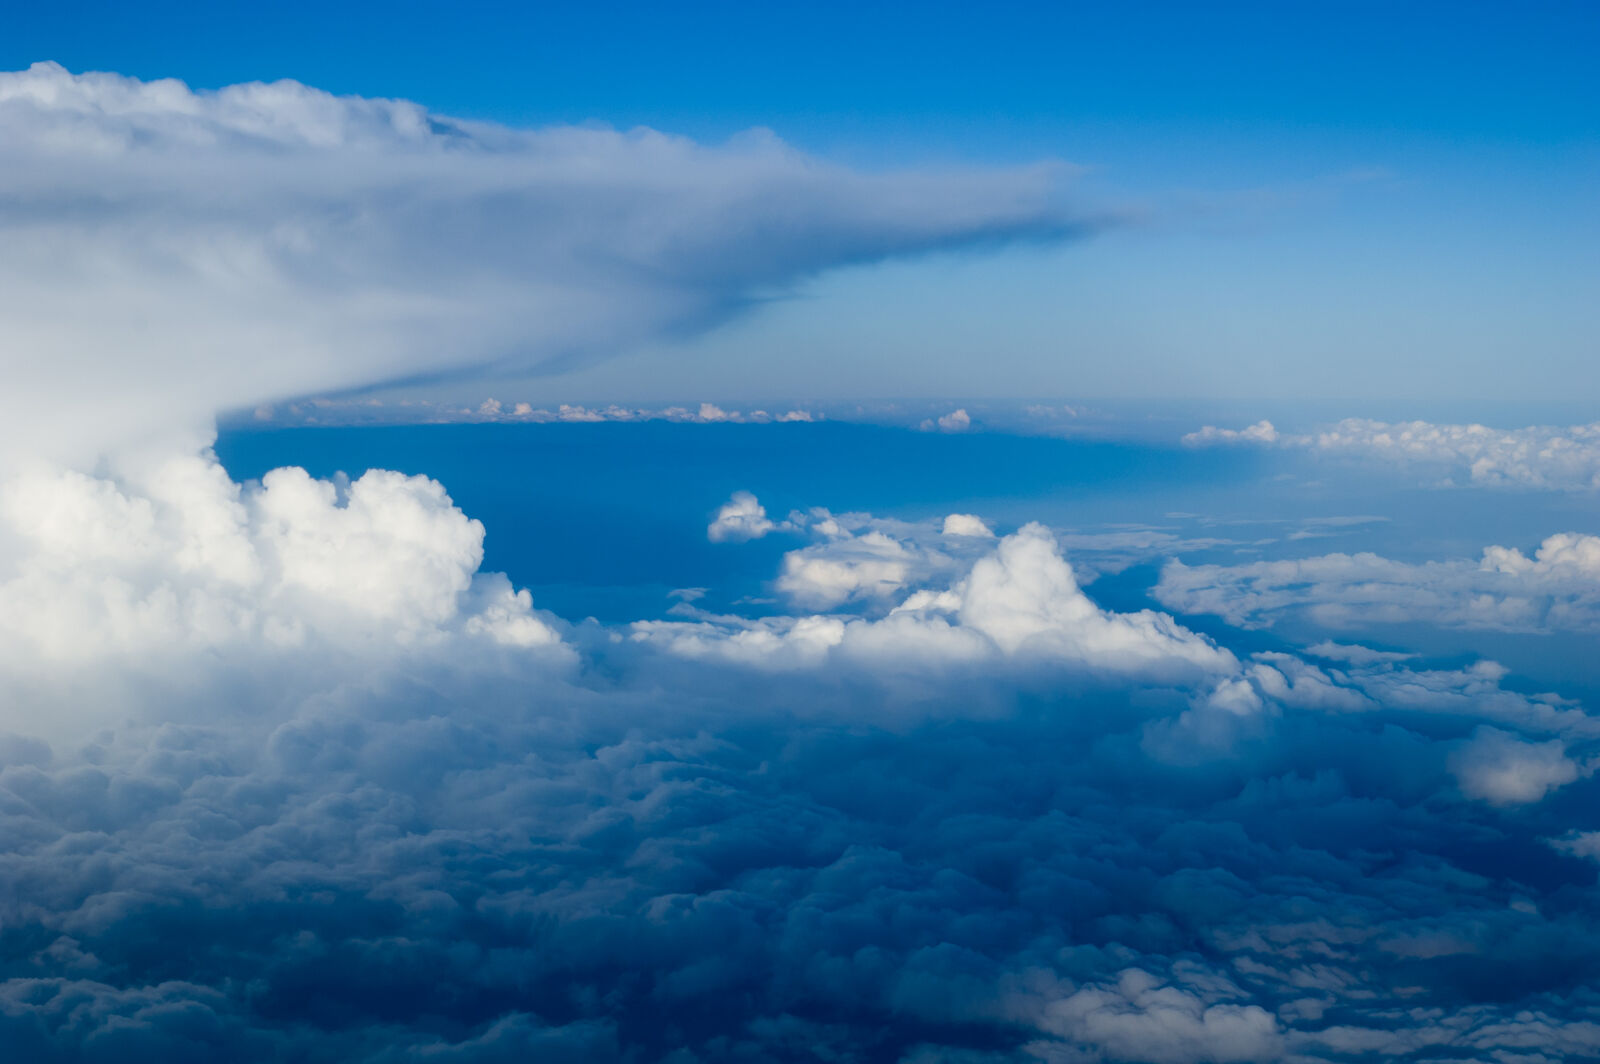 Nikon AF Nikkor 50mm F1.8D sample photo. Blue, sky, clouds, clouds photography